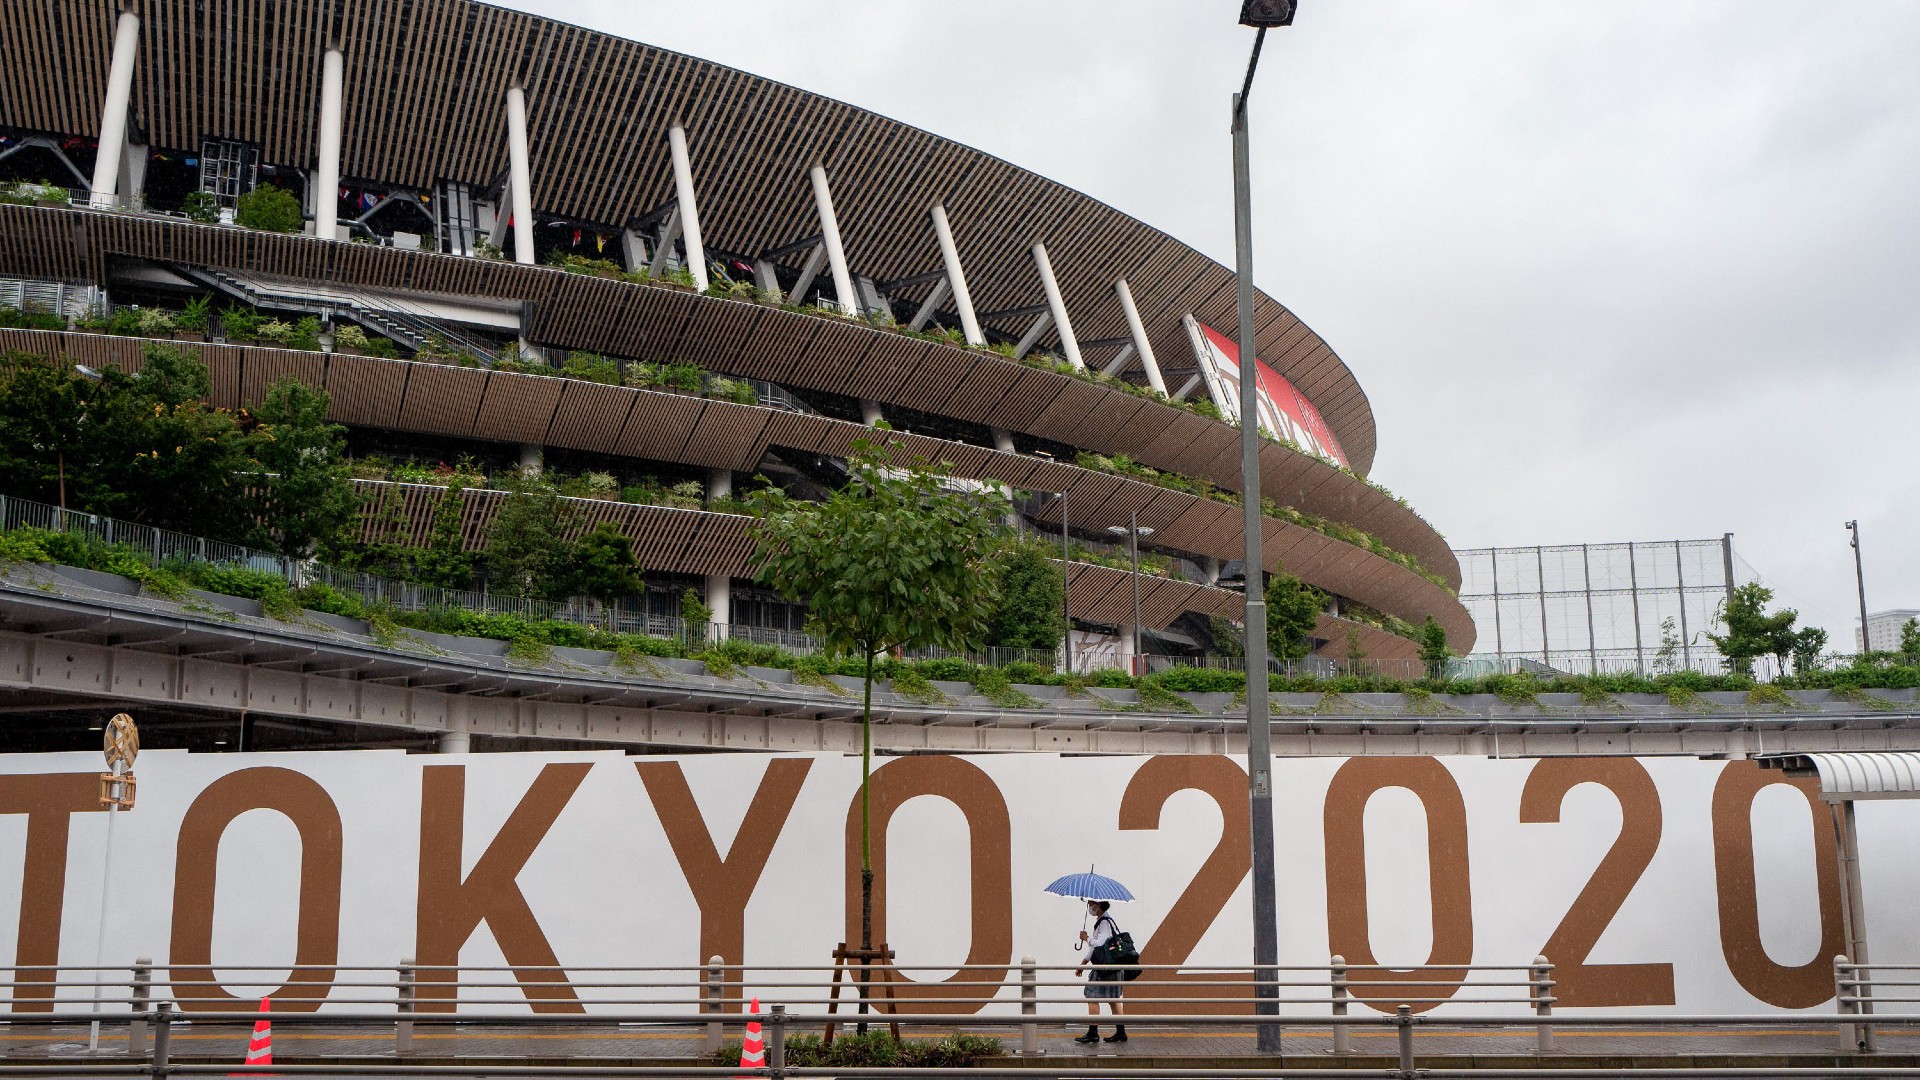 No Fans At Tokyo Paralympics Says Organizers